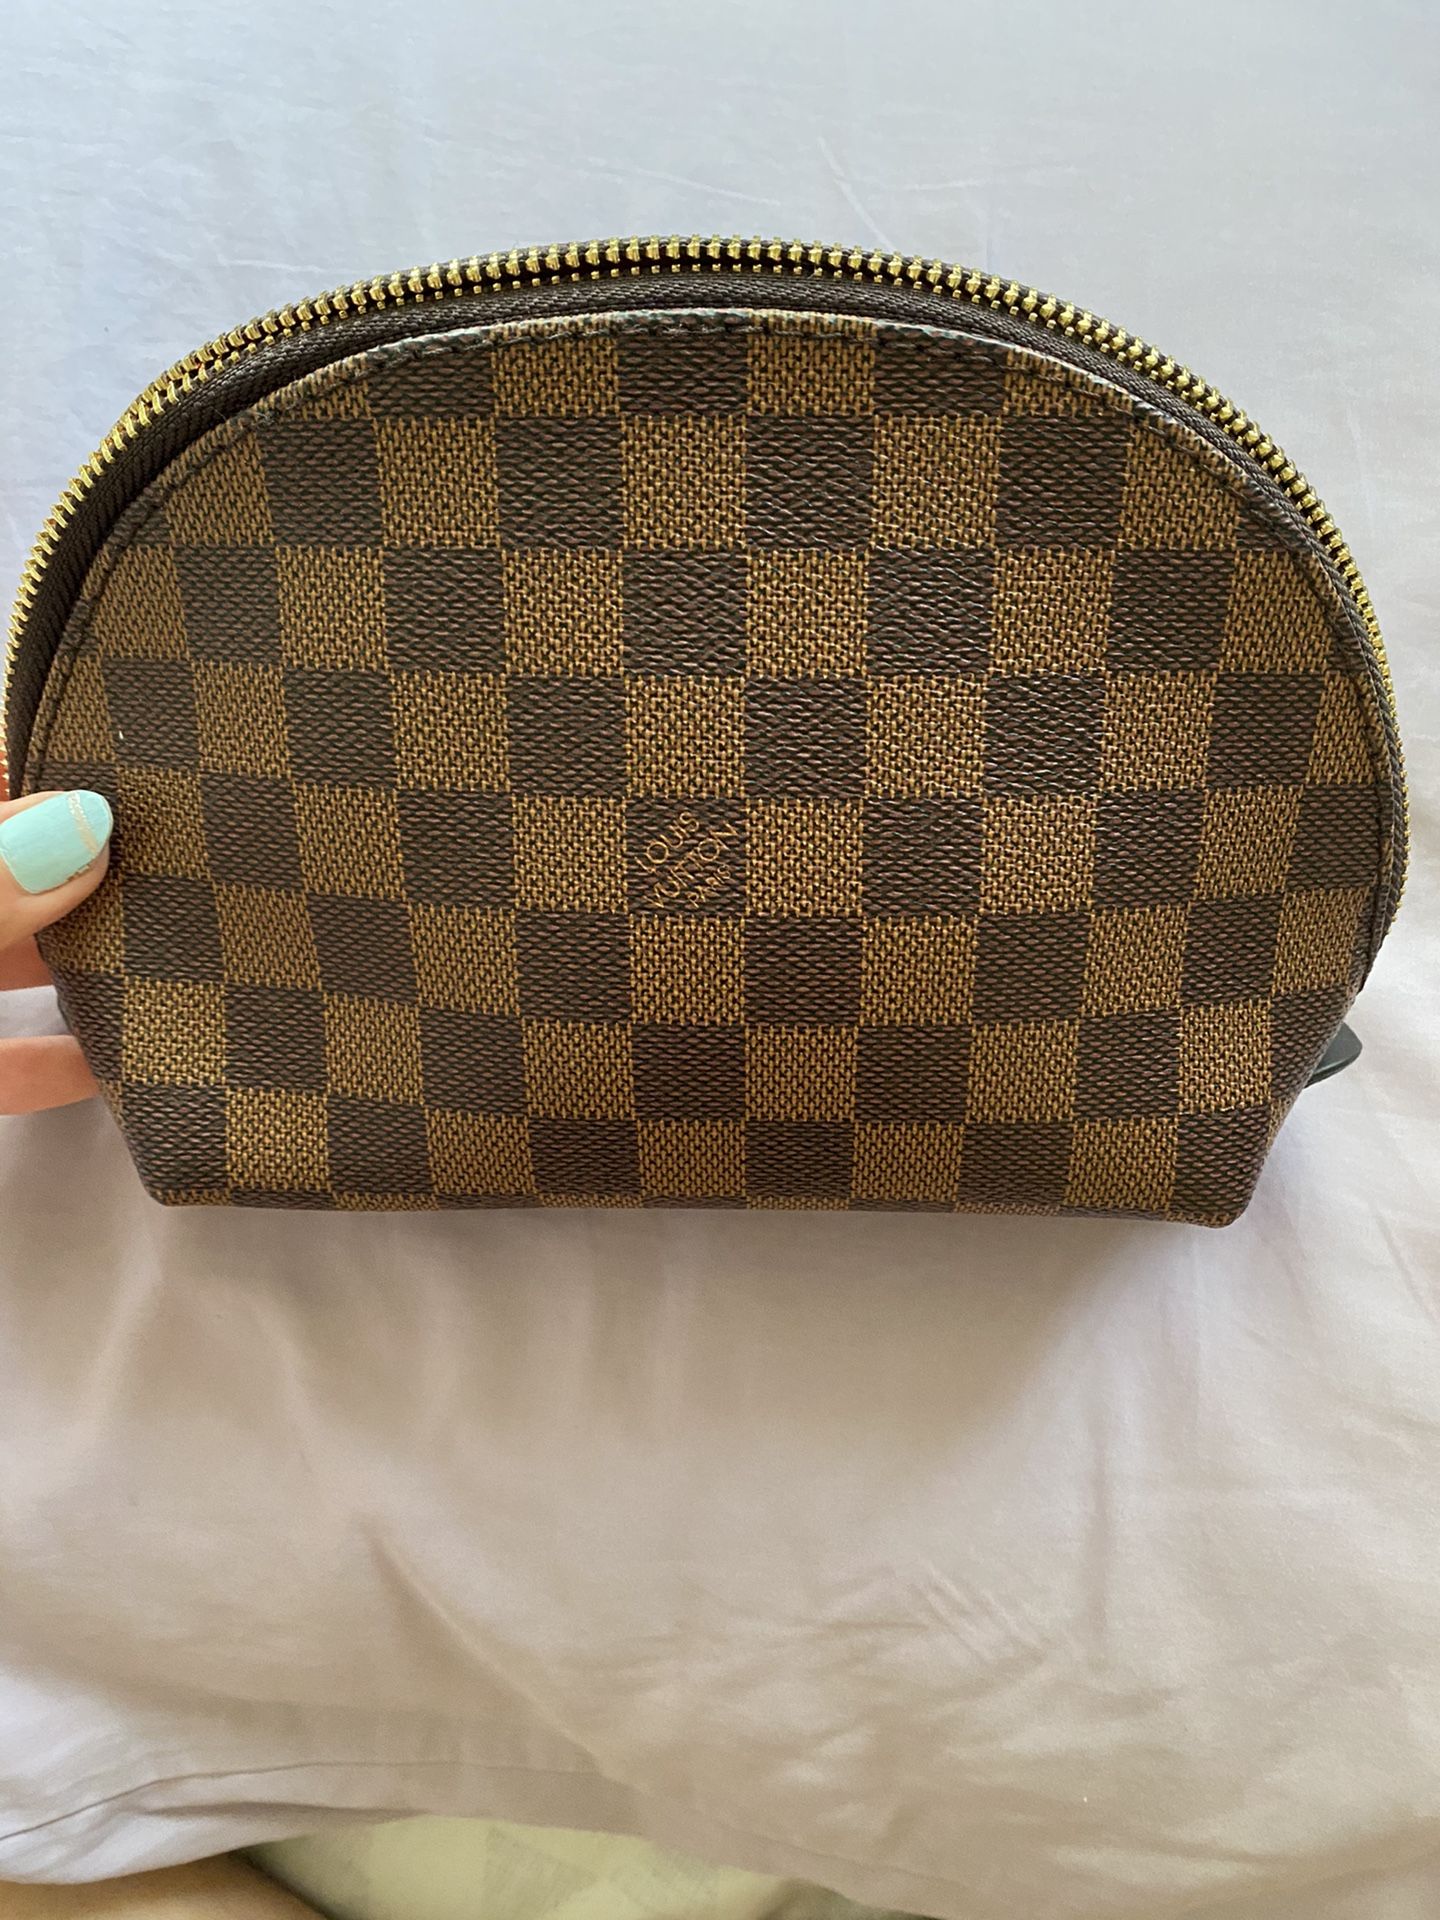 Designer bag wallet make up bag brand new leather